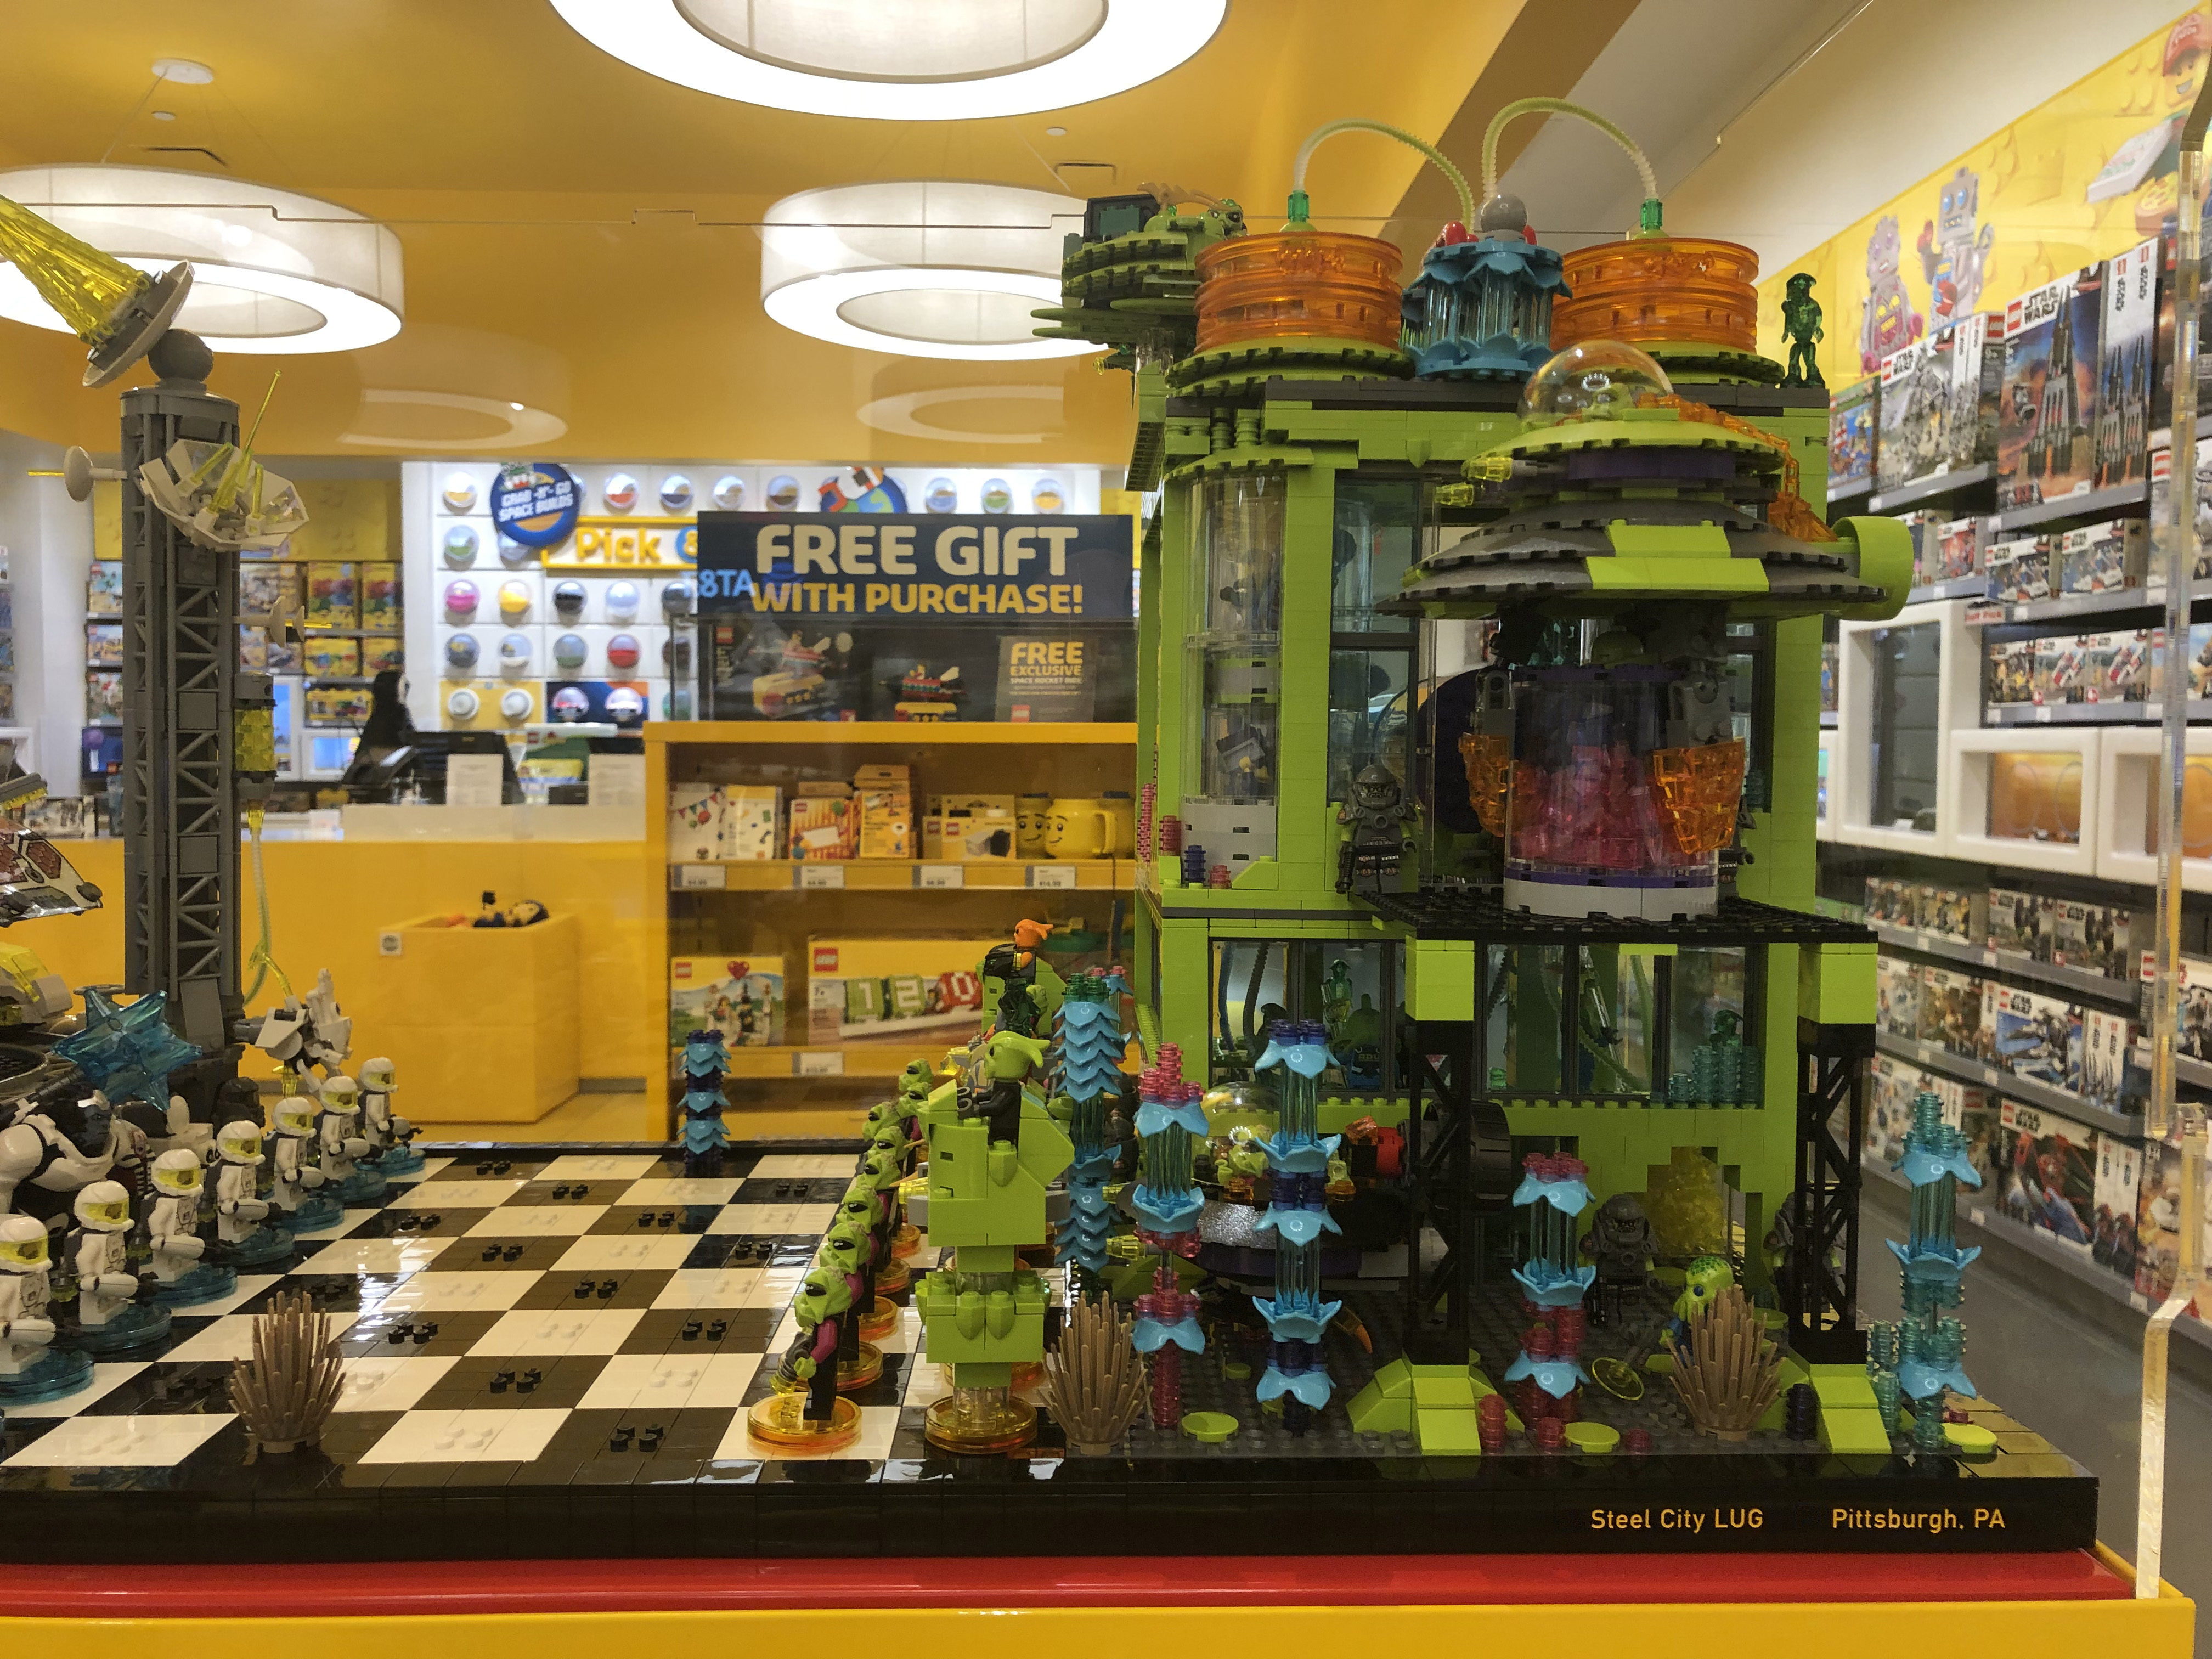 Hals Ødelæggelse At sige sandheden 2019 LEGO Store Display Summer – Steel City LUG